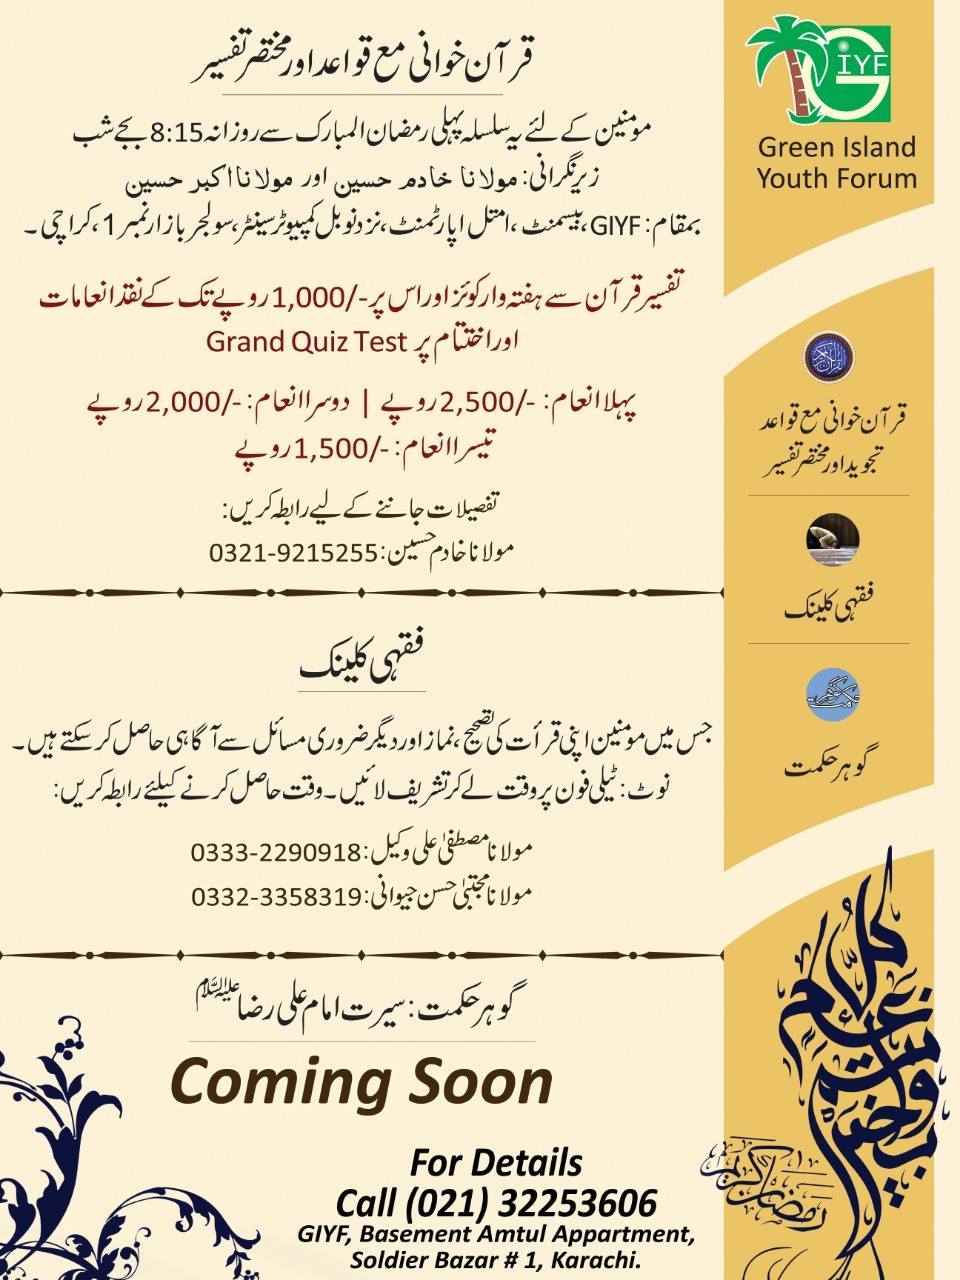 GIYF Ramadan Program 2019